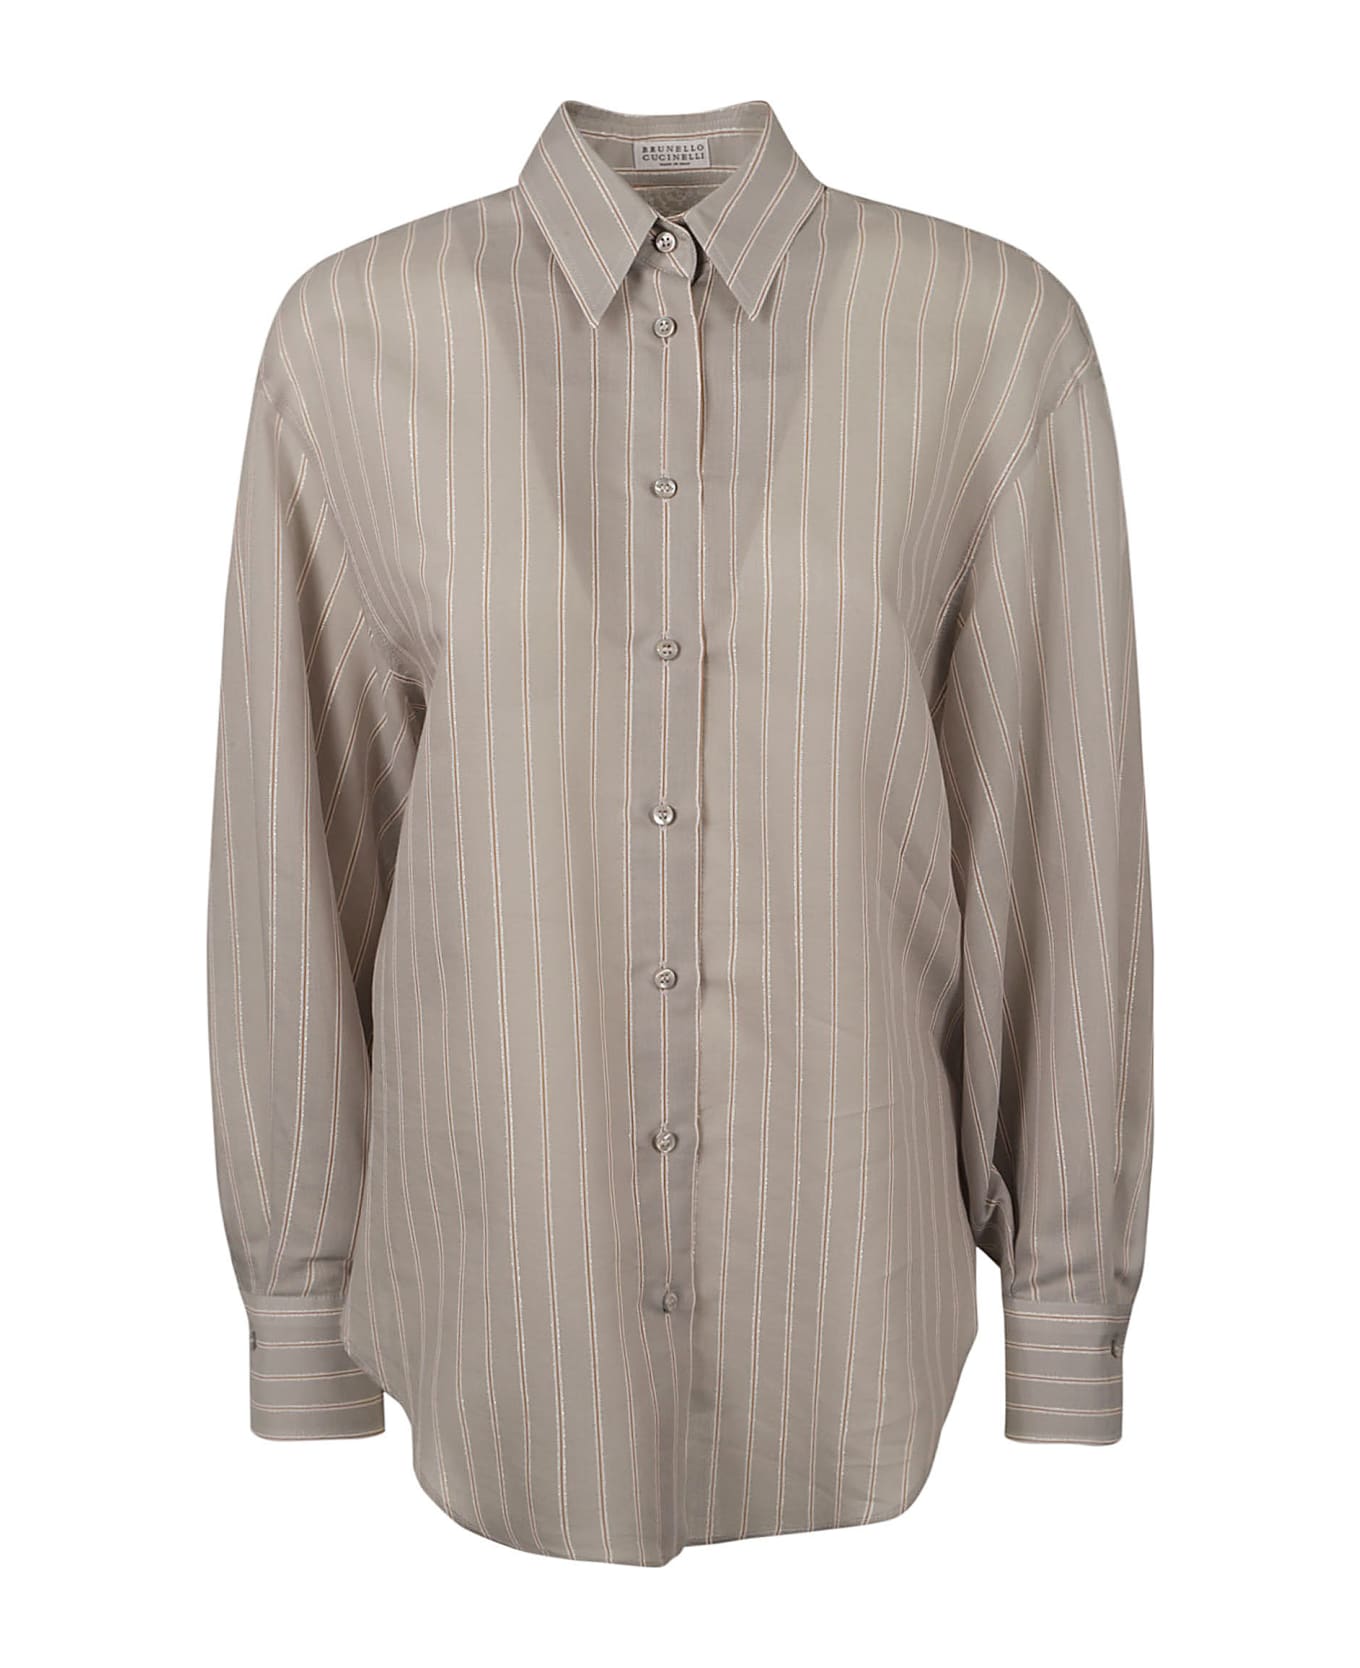 Brunello Cucinelli Pinstripe Shirt - Grey/White